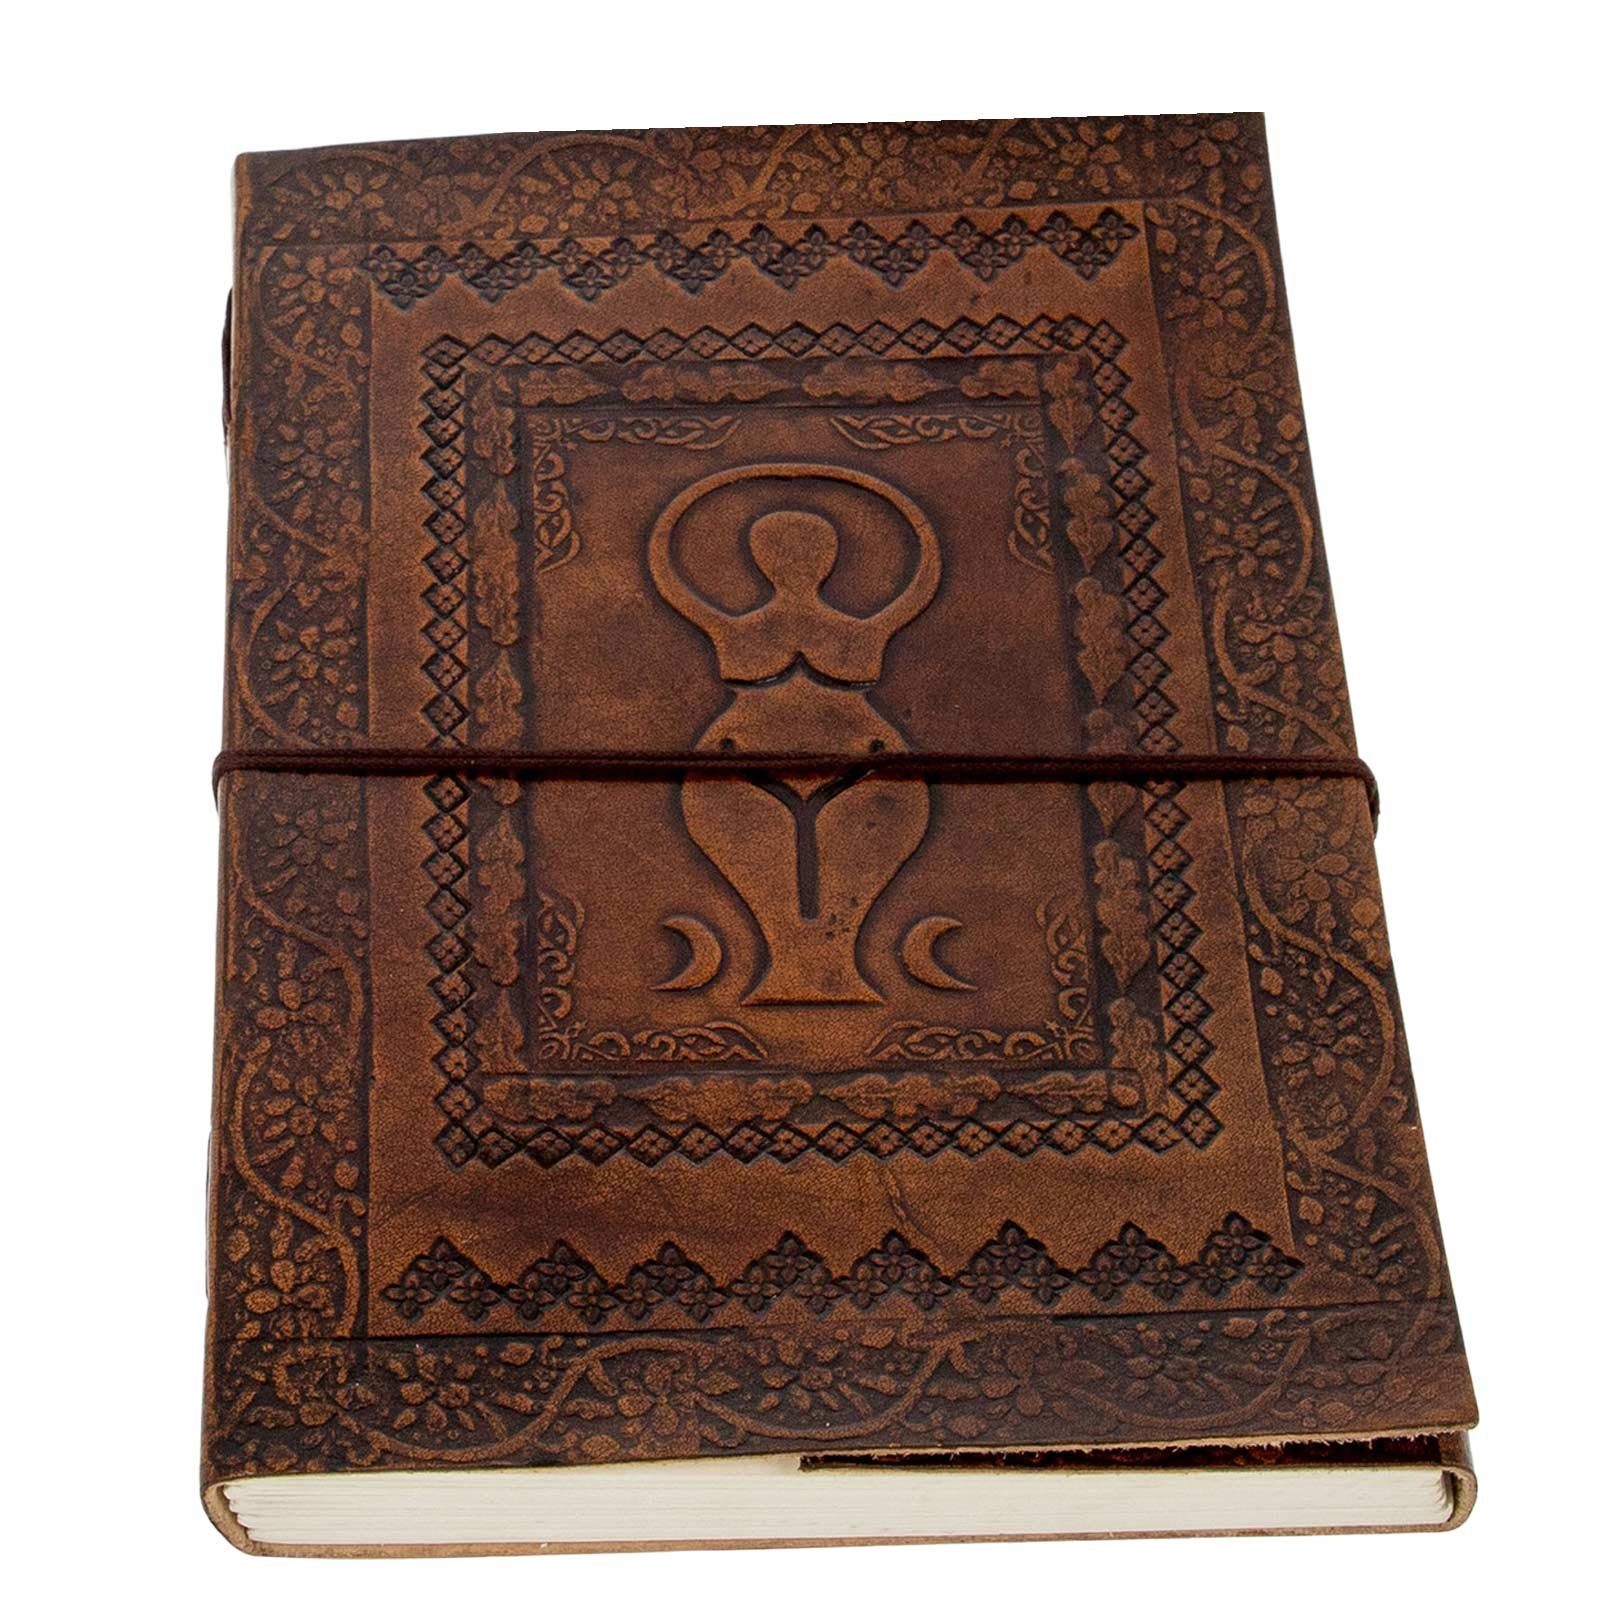 UND 25x18cm Leder Tagebuch Göttin Tagebuch Große Notizbuch KUNST Mondgöttin Wicca XL MAGIE